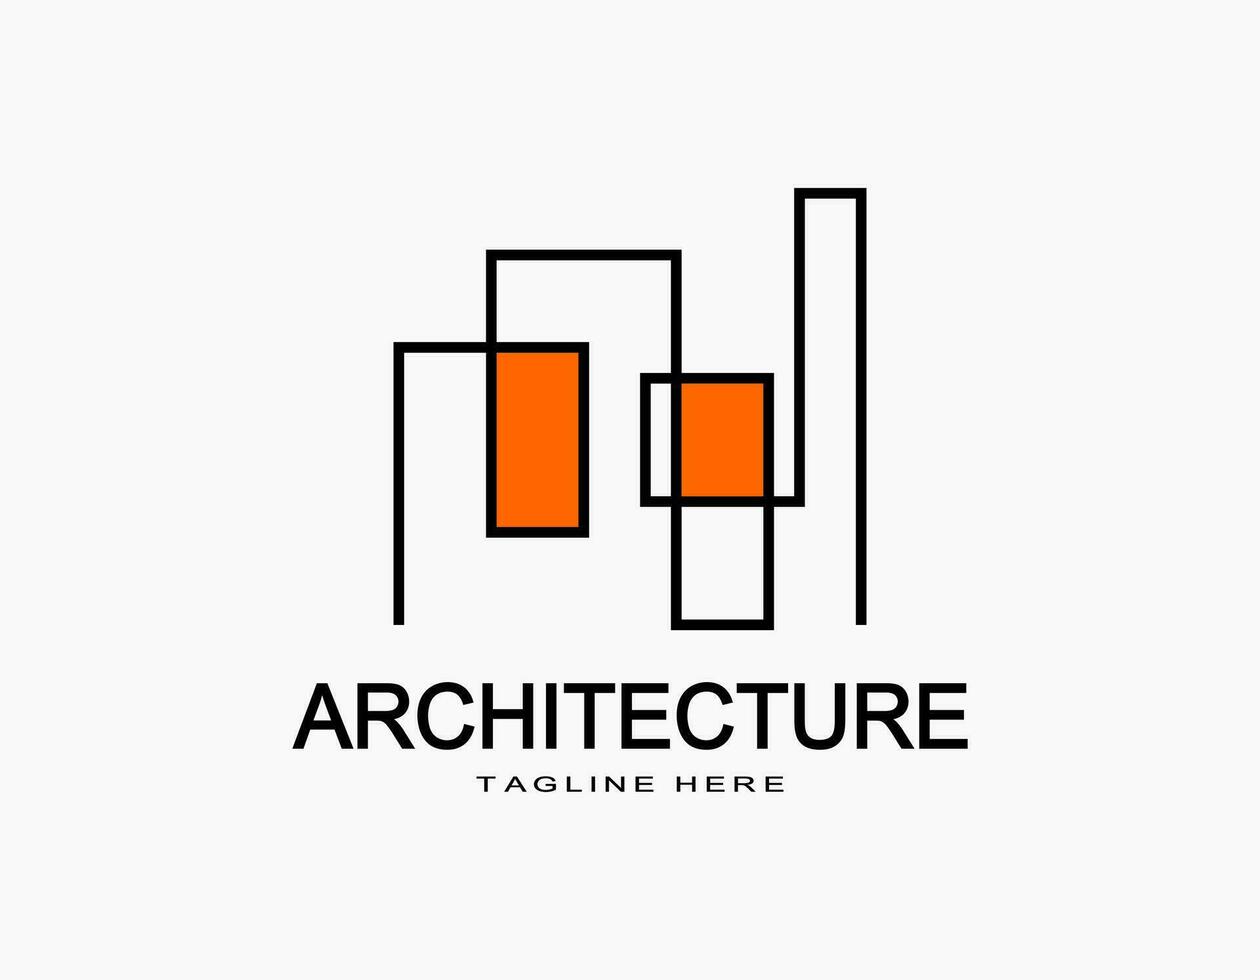 arquitectura resumen logo en naranja. sencillo vector con líneas ese formar un edificio o departamento. diseño para compañía, arquitectura, desarrollador, residencia.